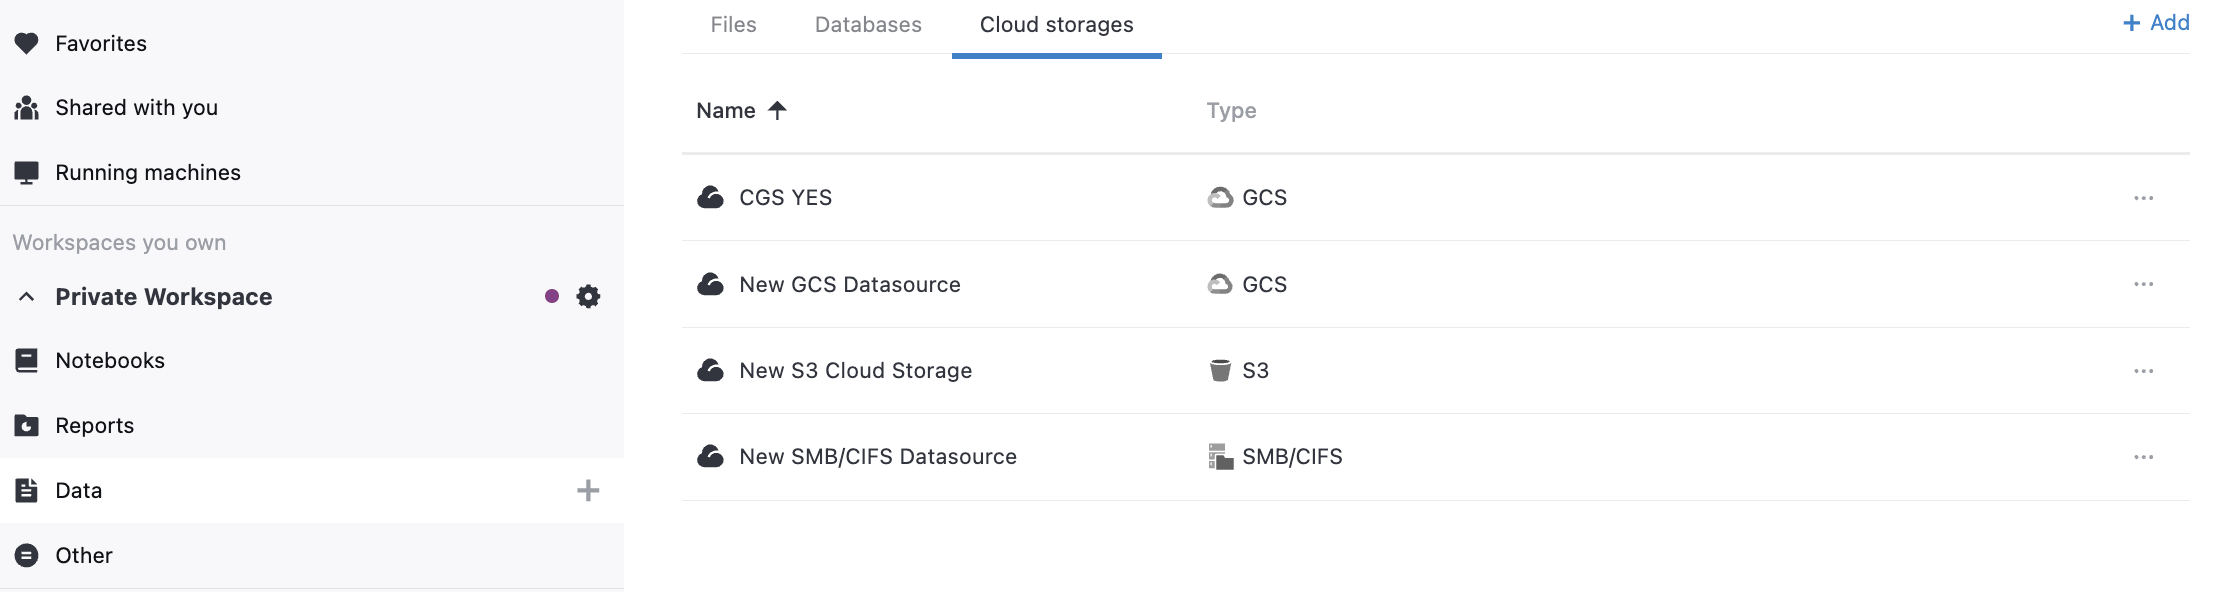 Cloud storages menu